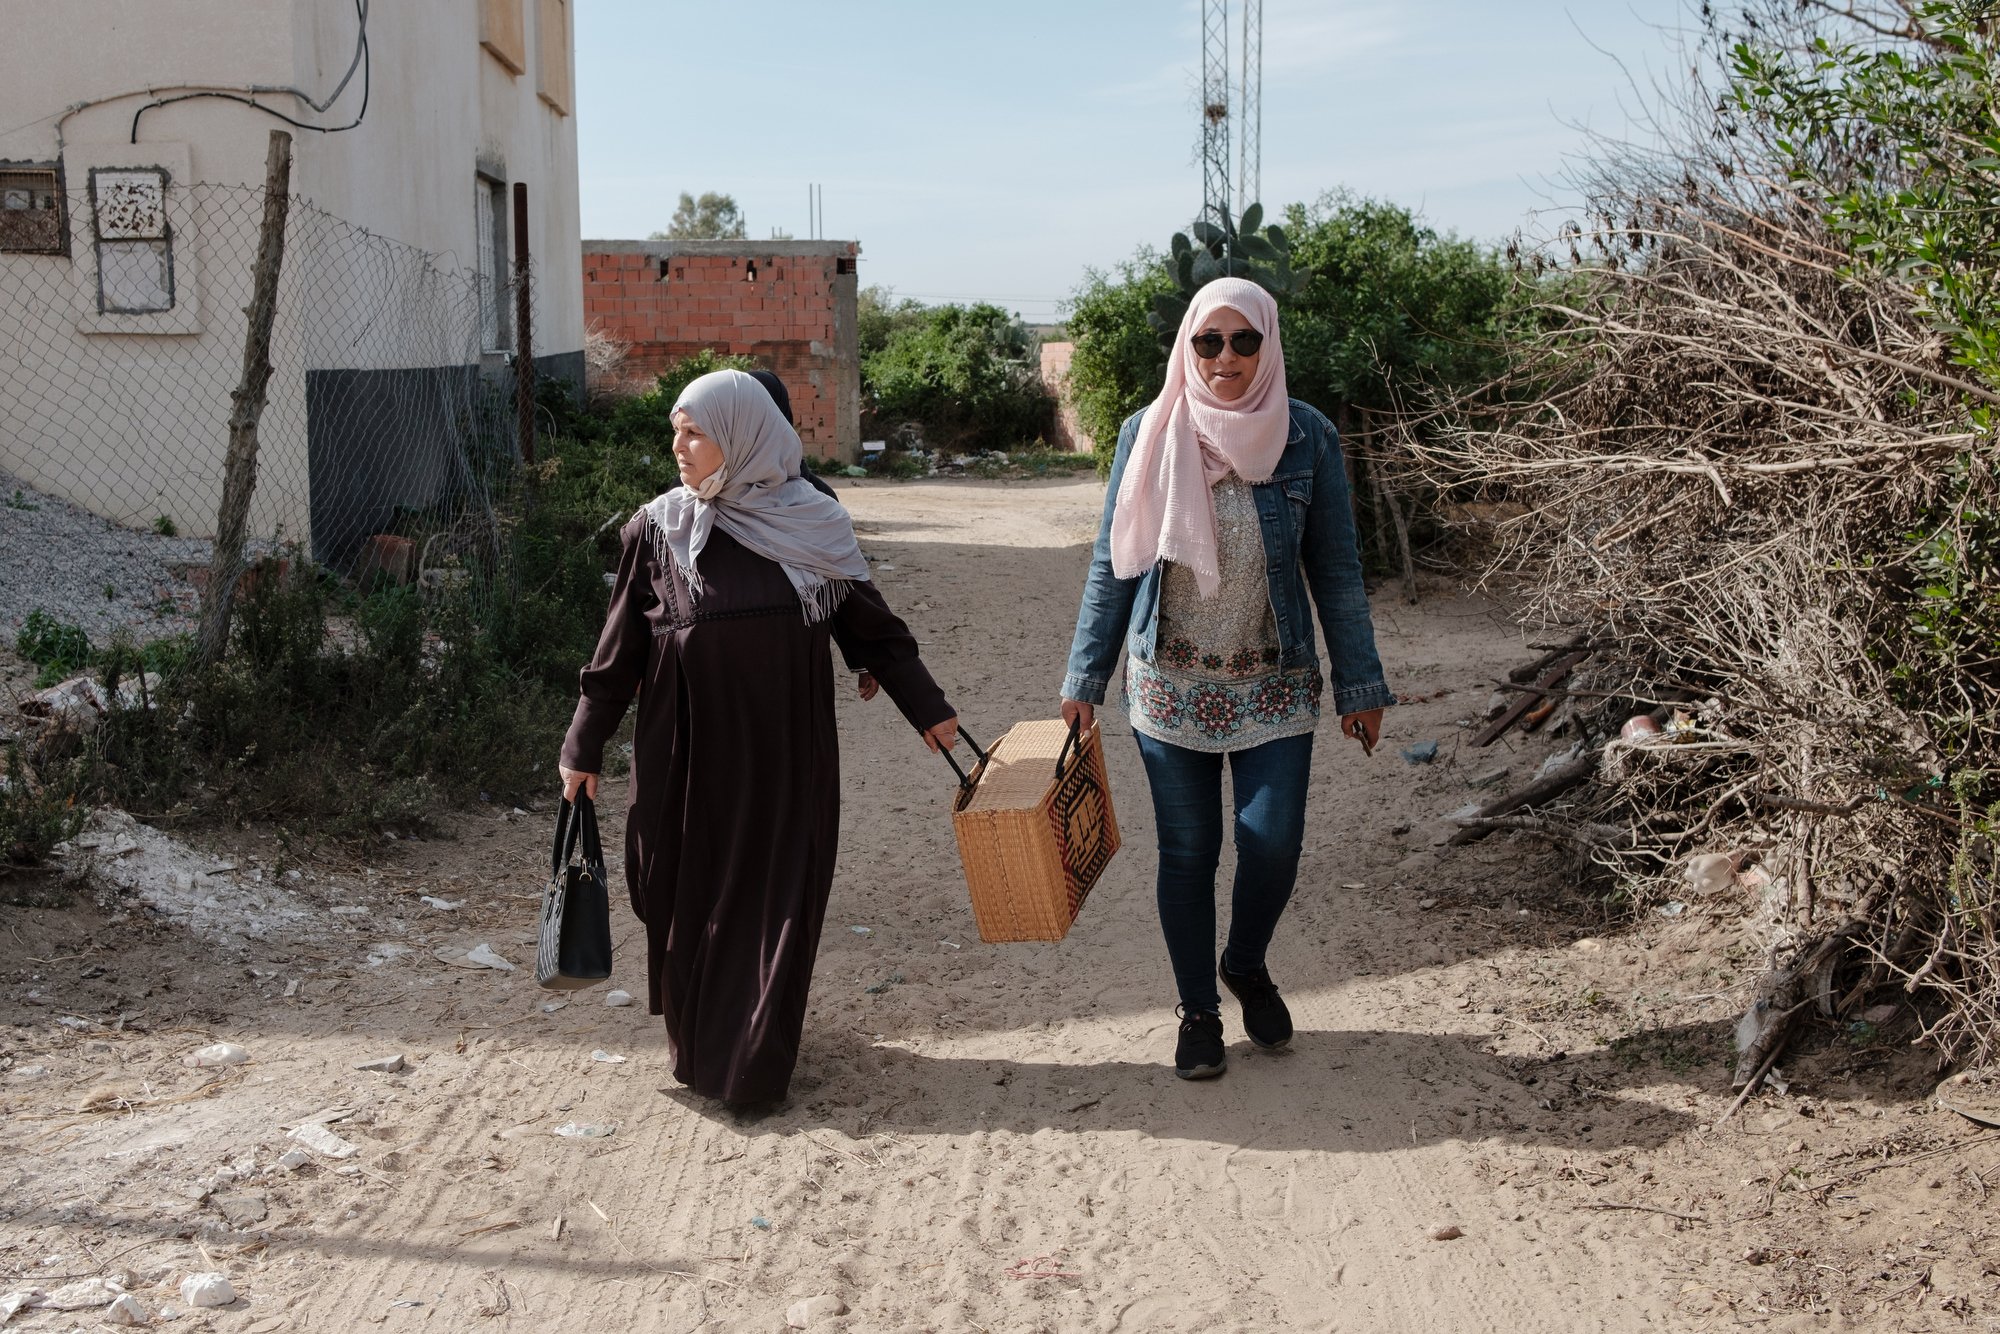  Nadia et Fatma marche dans le village de Yakoub où habite Fatma. Elles se rendent à la ferme de Fatma pour aller voir ses ruches. 